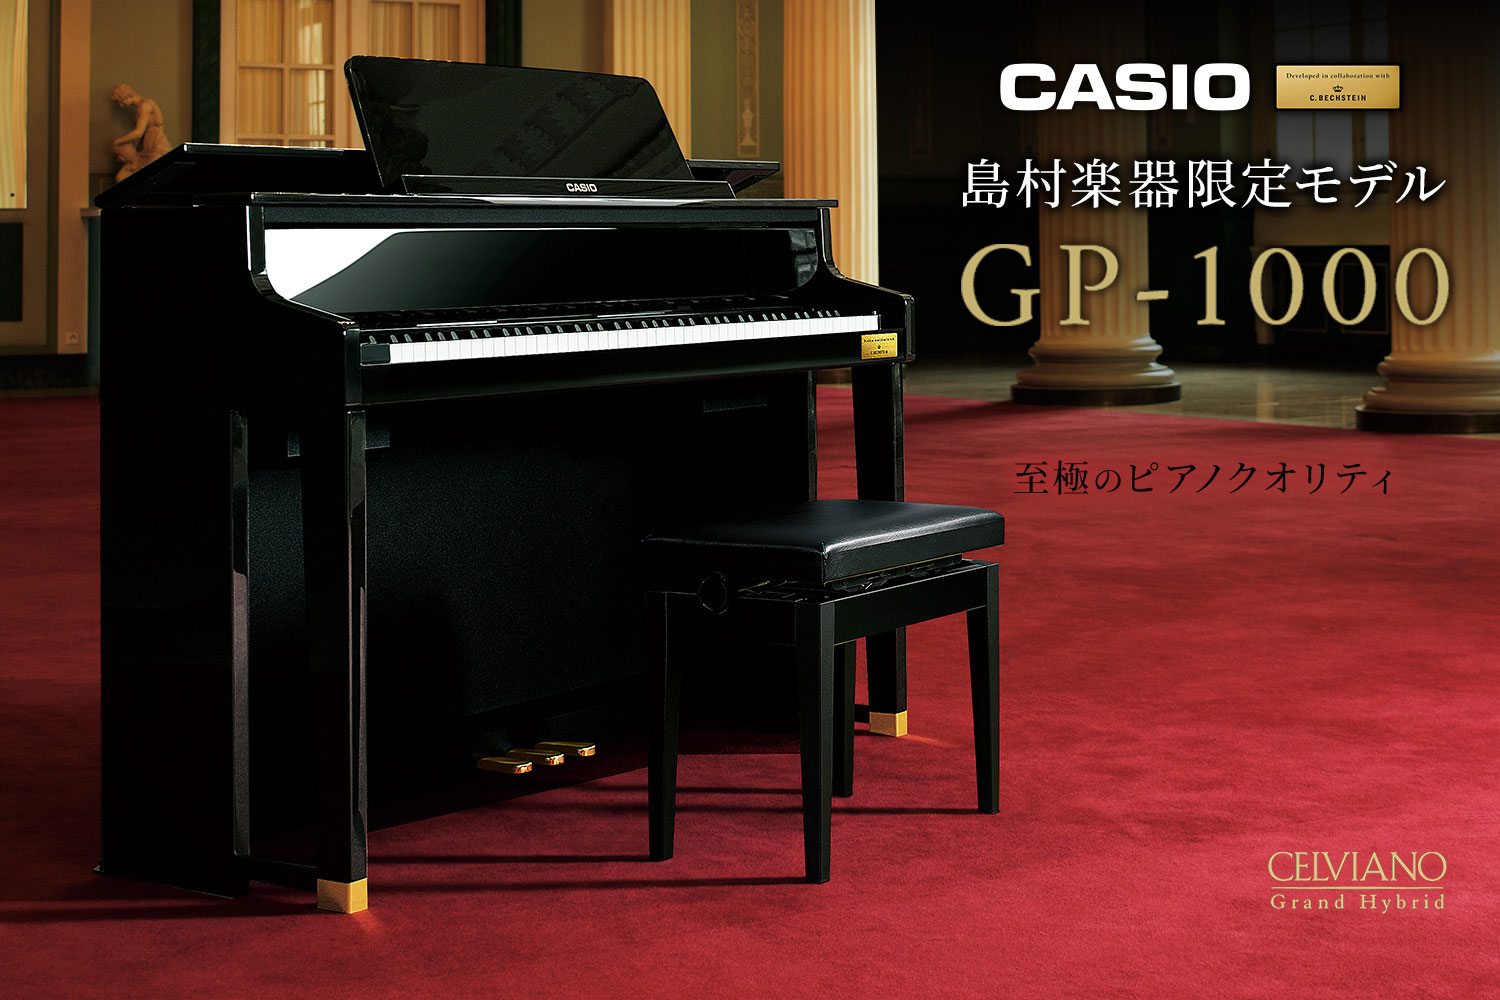 CASIO×C.ベヒシュタイン コラボレーション電子ピアノに島村楽器限定モデル「GP-1000」が入荷しました！